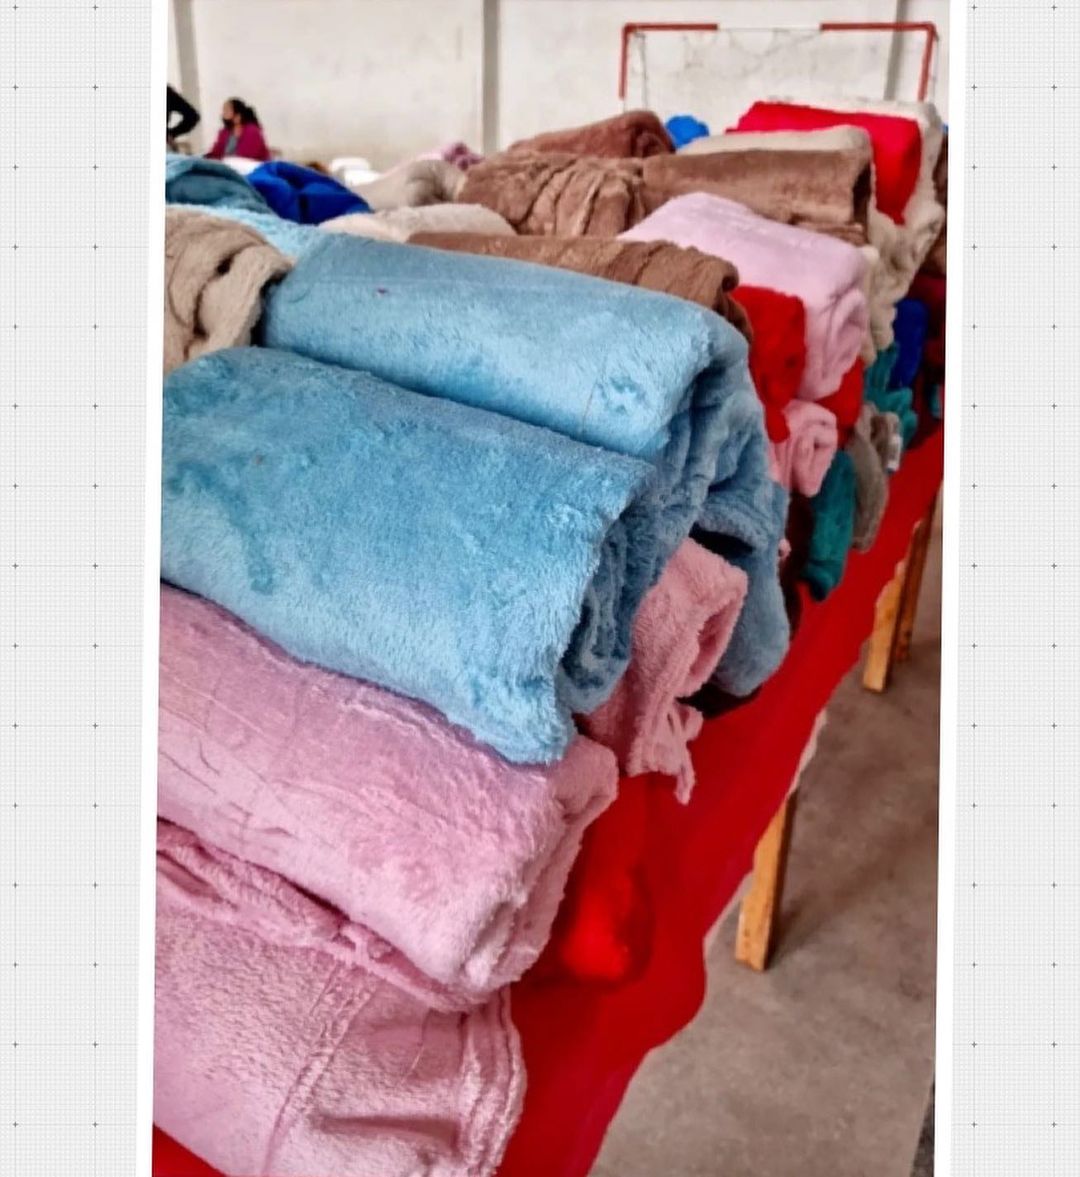 Prefeitura de Areia realiza entrega de cobertores a famílias carentes do município